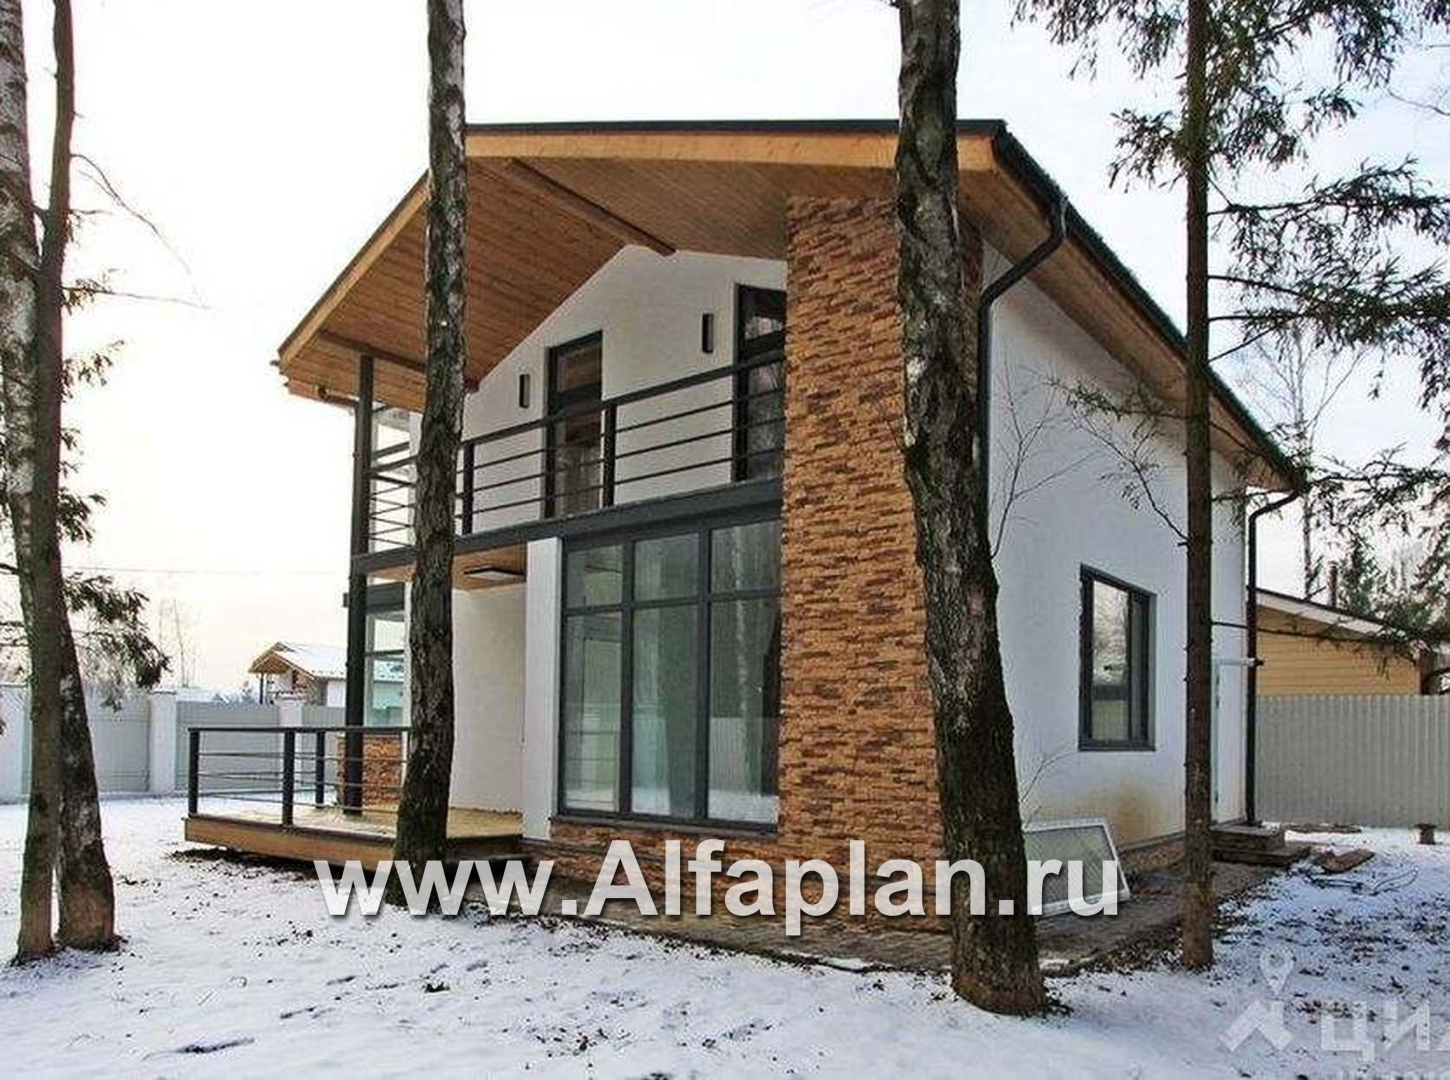 Проекты домов Альфаплан - Двухэтажный кирпичный коттедж с угловым витражом - дополнительное изображение №4